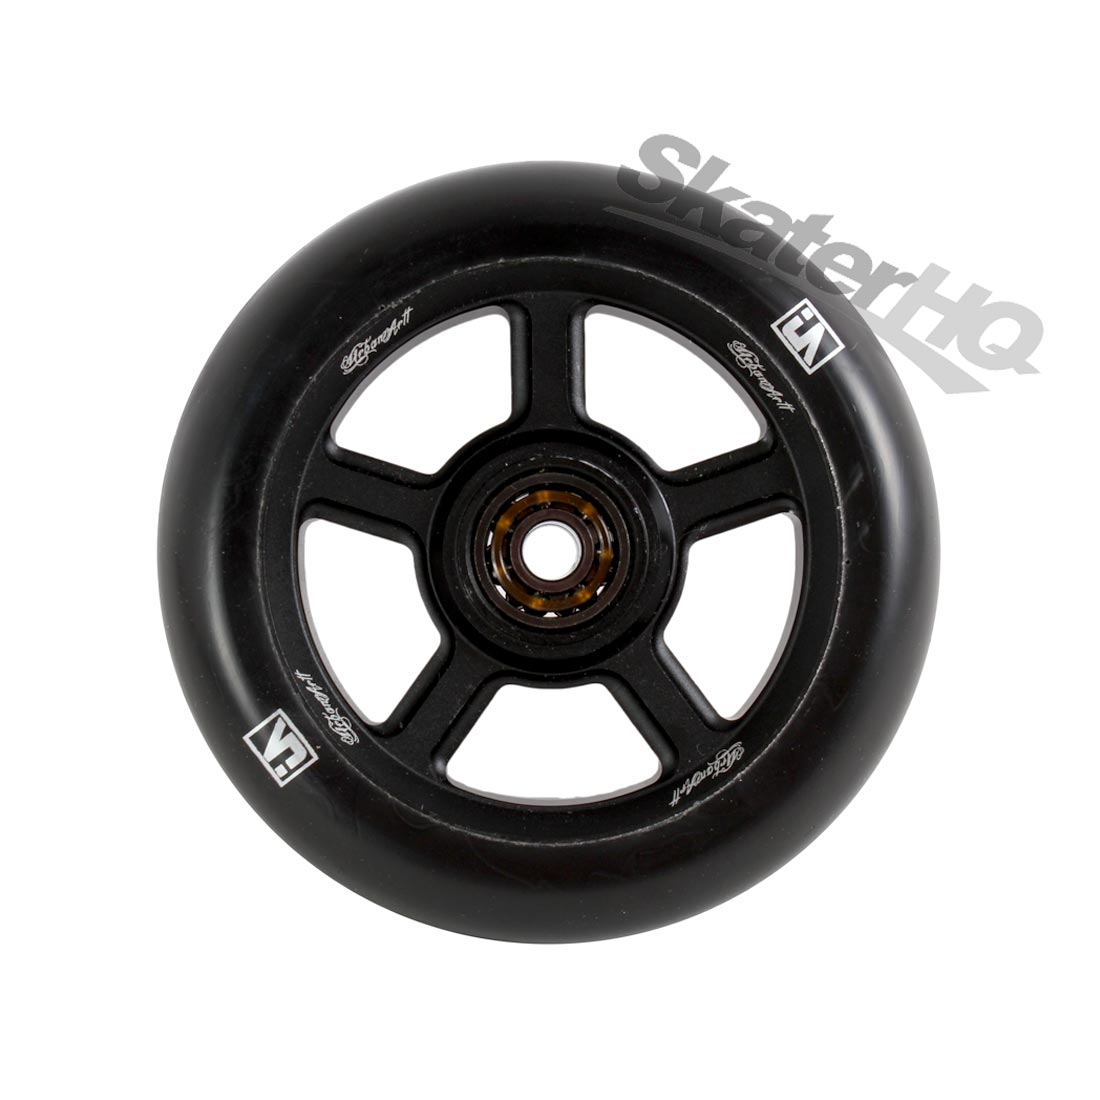 UrbanArtt S5 110mm Black w/ Bearings Scooter Wheels